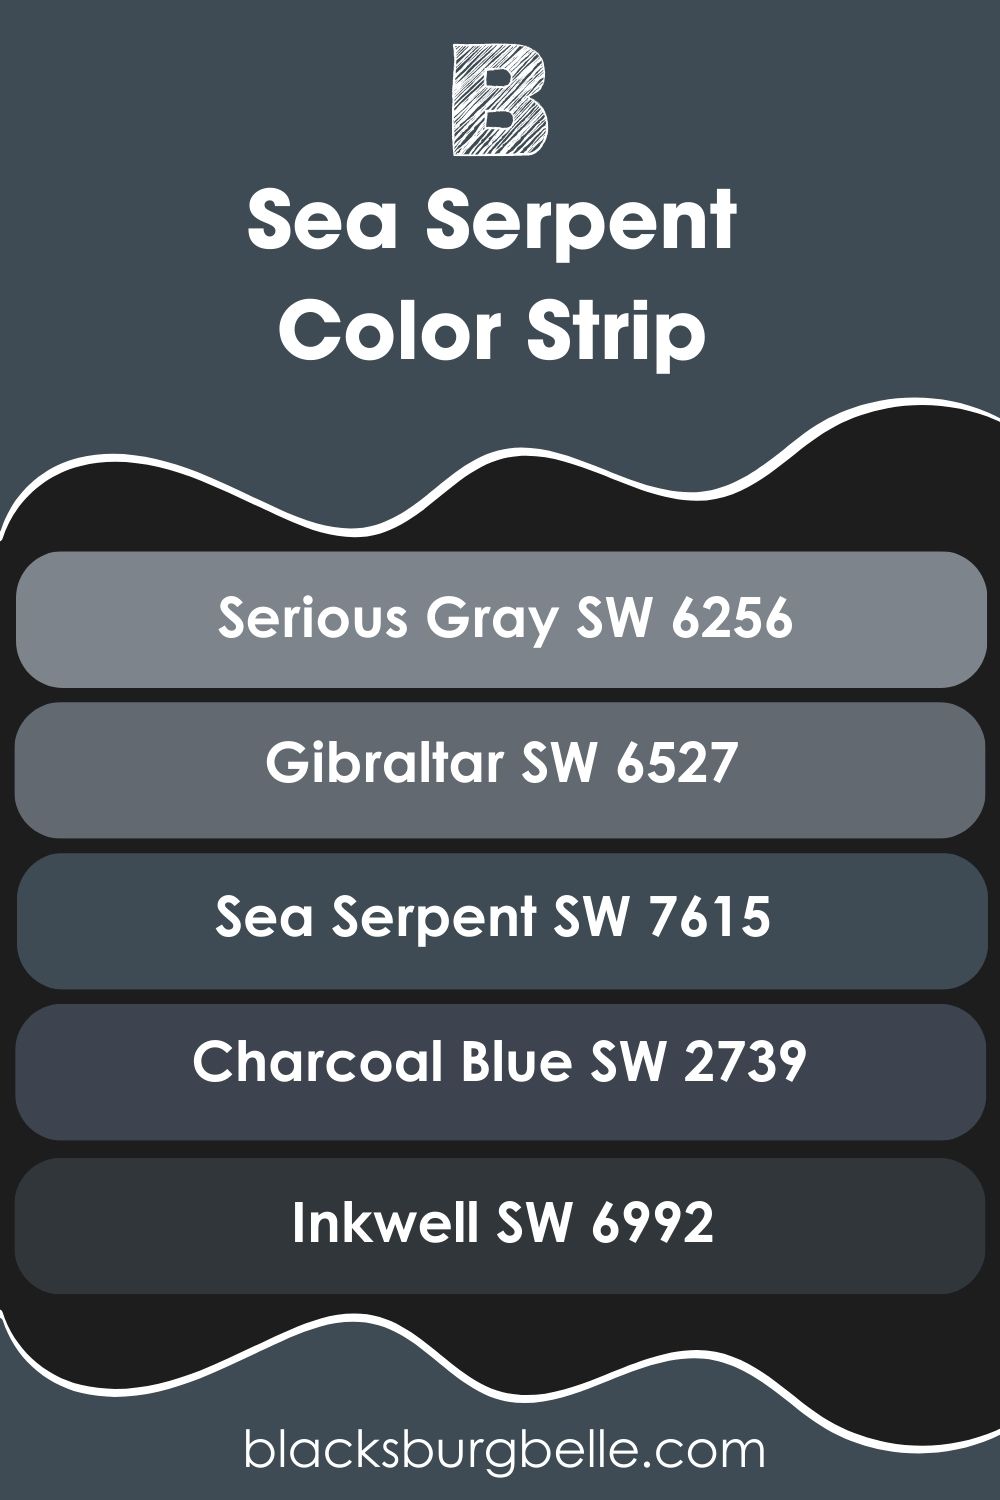 Sea Serpent Color Strip